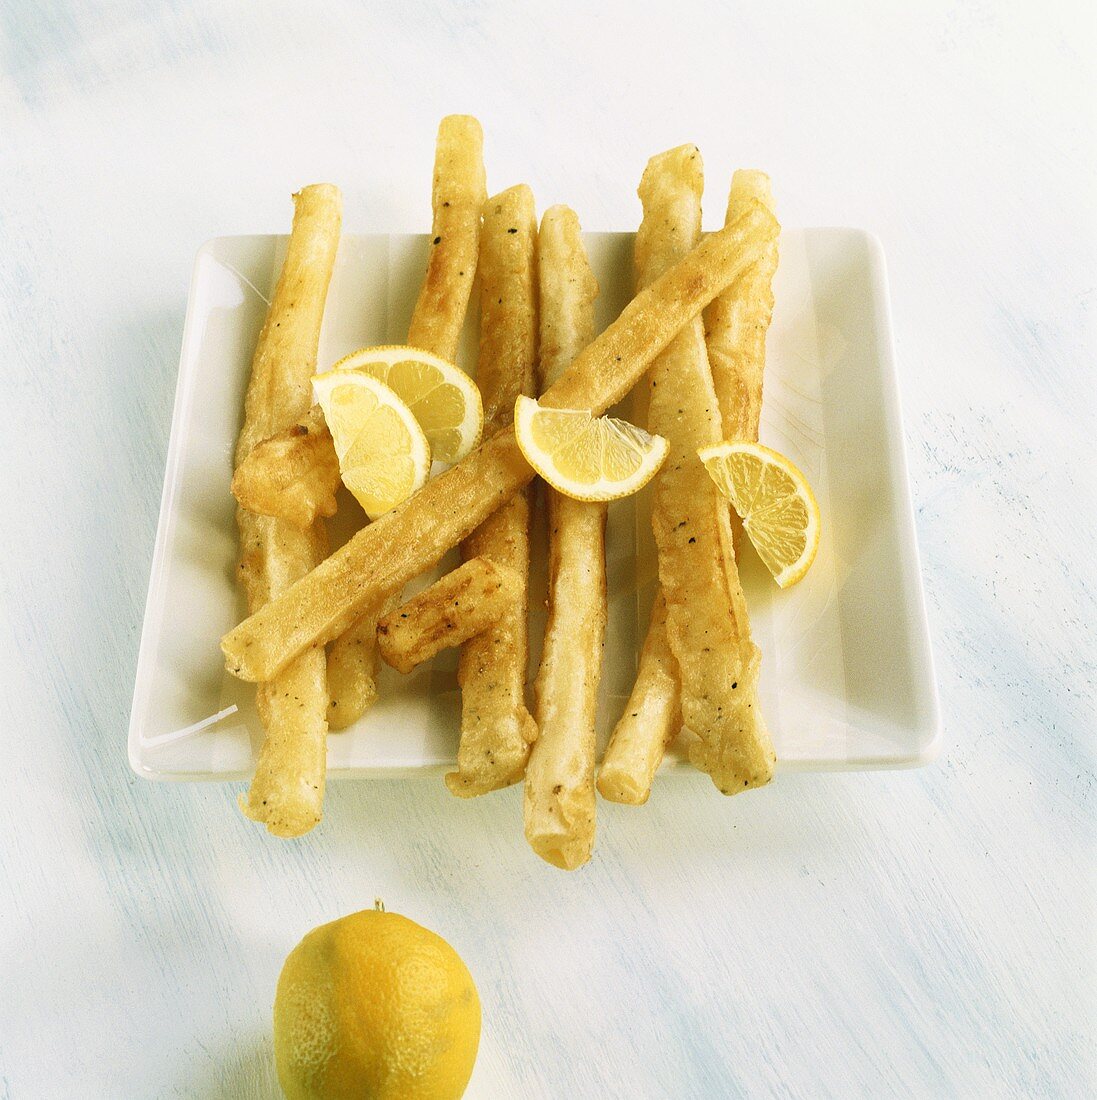 Fried scorzonera with lemon wedges